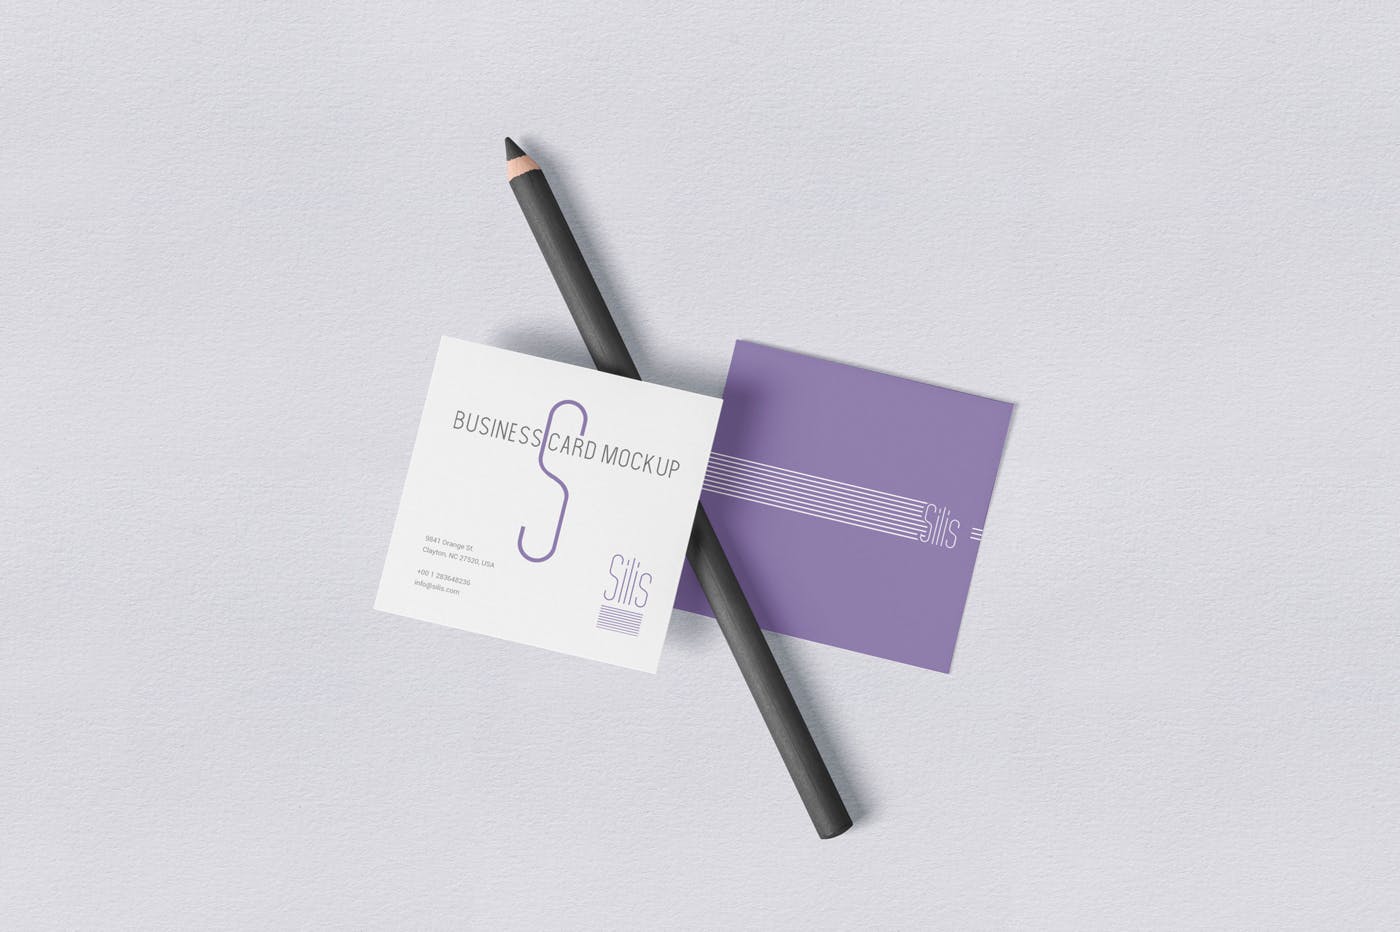 方形名片叠放阴影效果样机蚂蚁素材精选模板 Square Shaped Business Card Mockups插图(2)